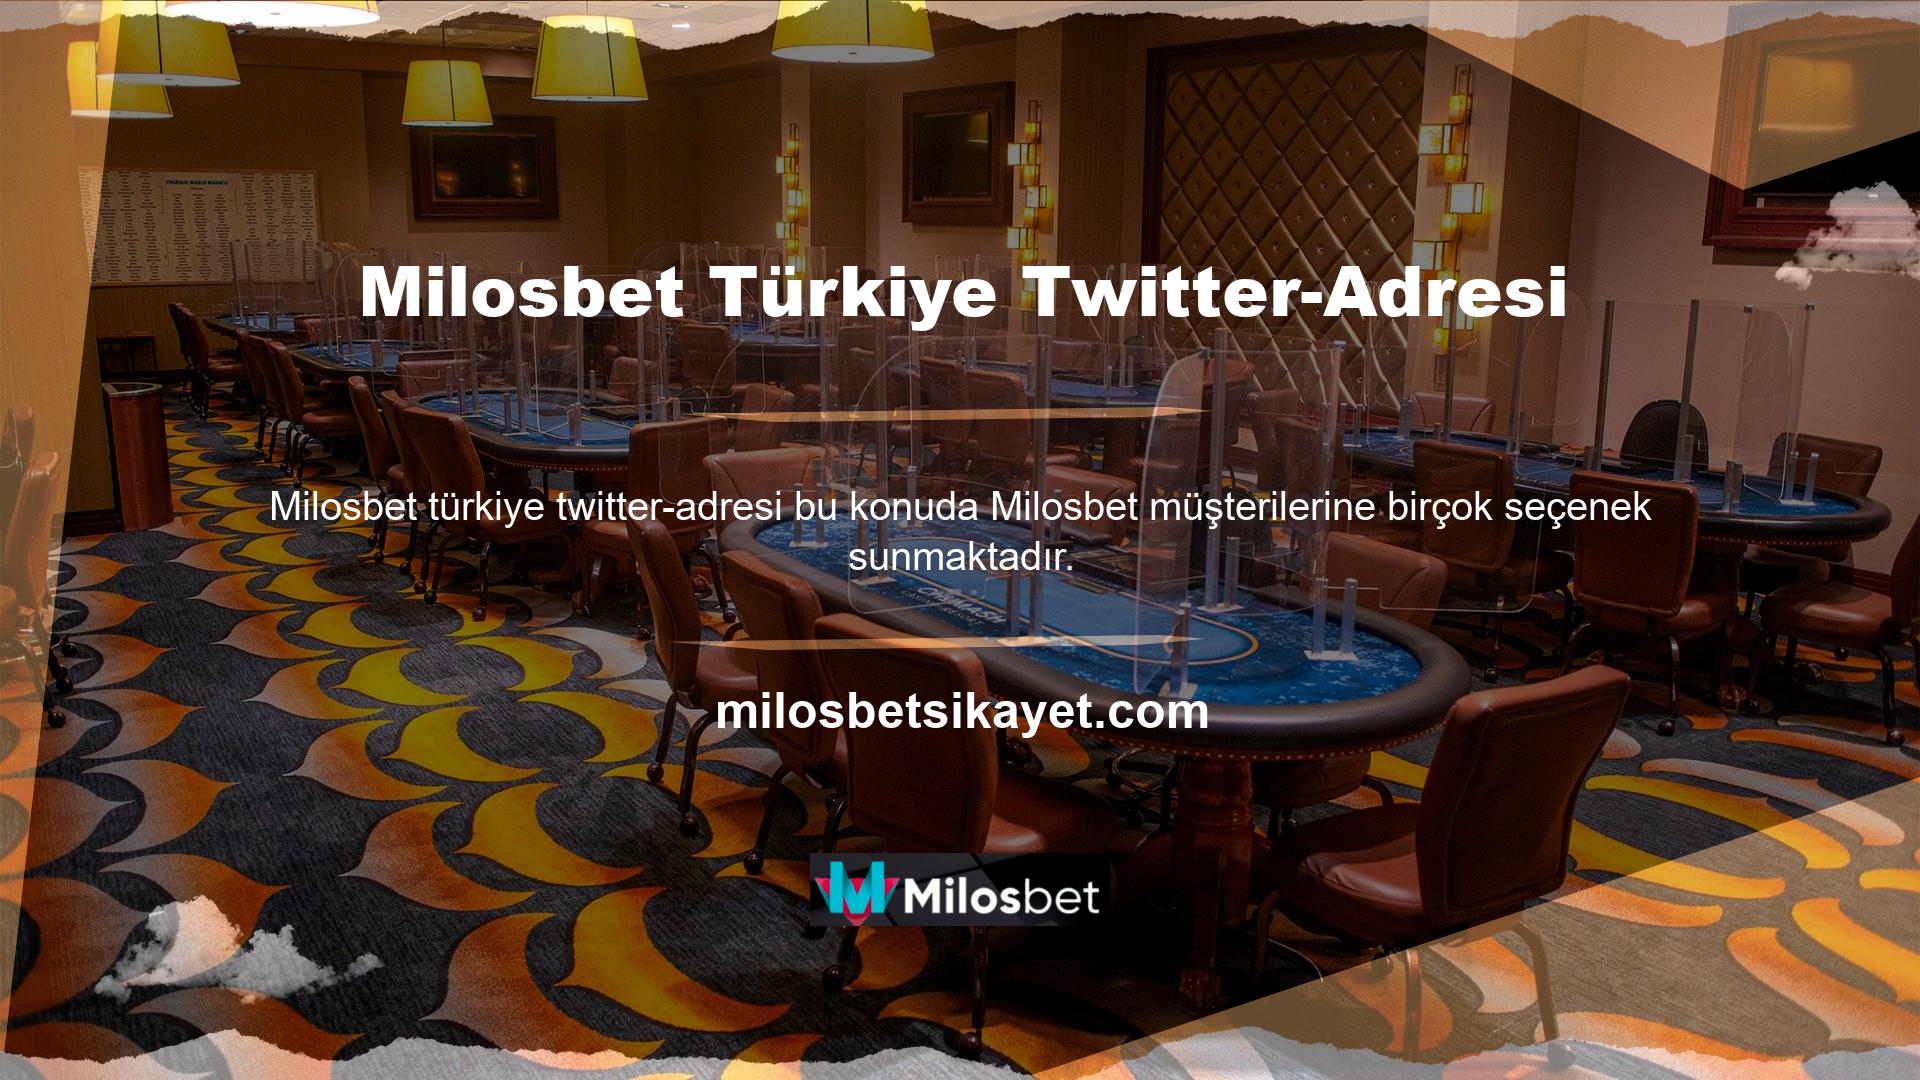 Milosbet Türkiye'deki üyeliğini genişletmeye devam ediyor